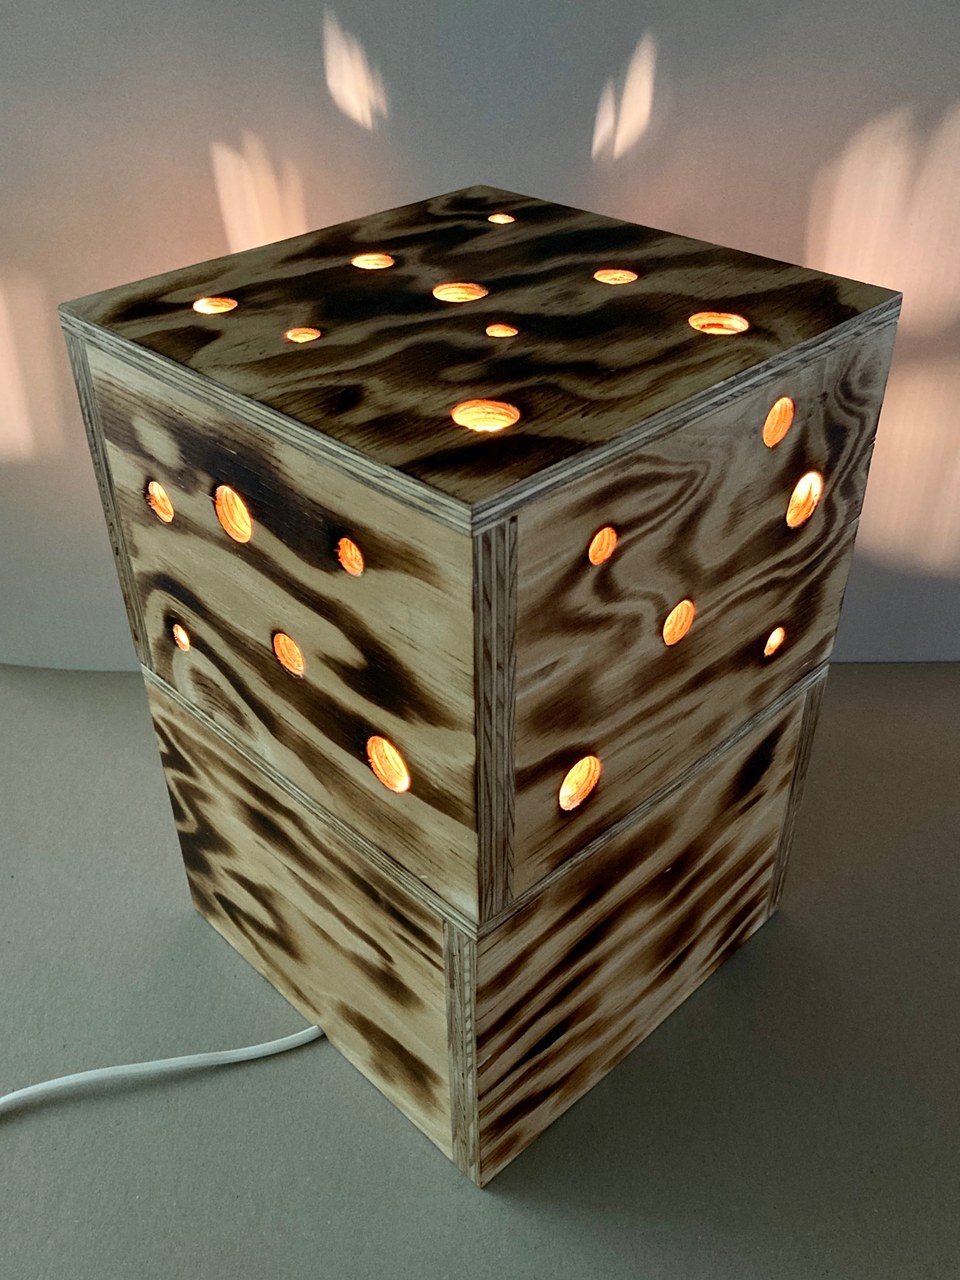 Set Lampenfassung E27 Holz für Pendelleuchten und DIY-Hängelampen